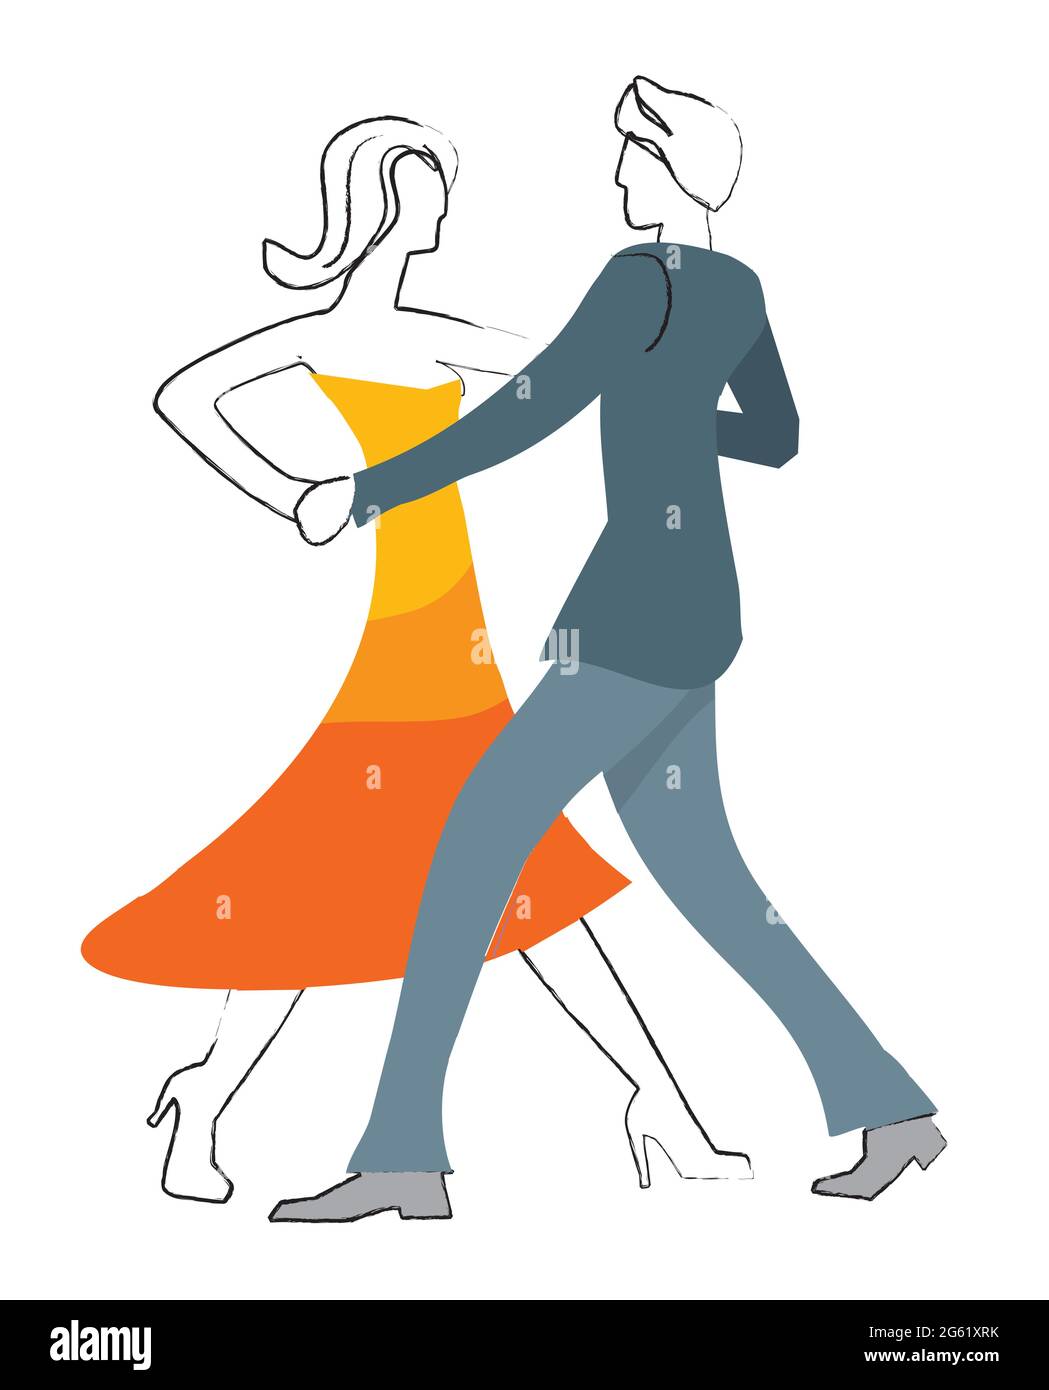 Coppia ballerini Balroom. Illustrazione stilizzata della danza di coppia  nella sala da ballo su sfondo bianco. Vettore disponibile Immagine e  Vettoriale - Alamy